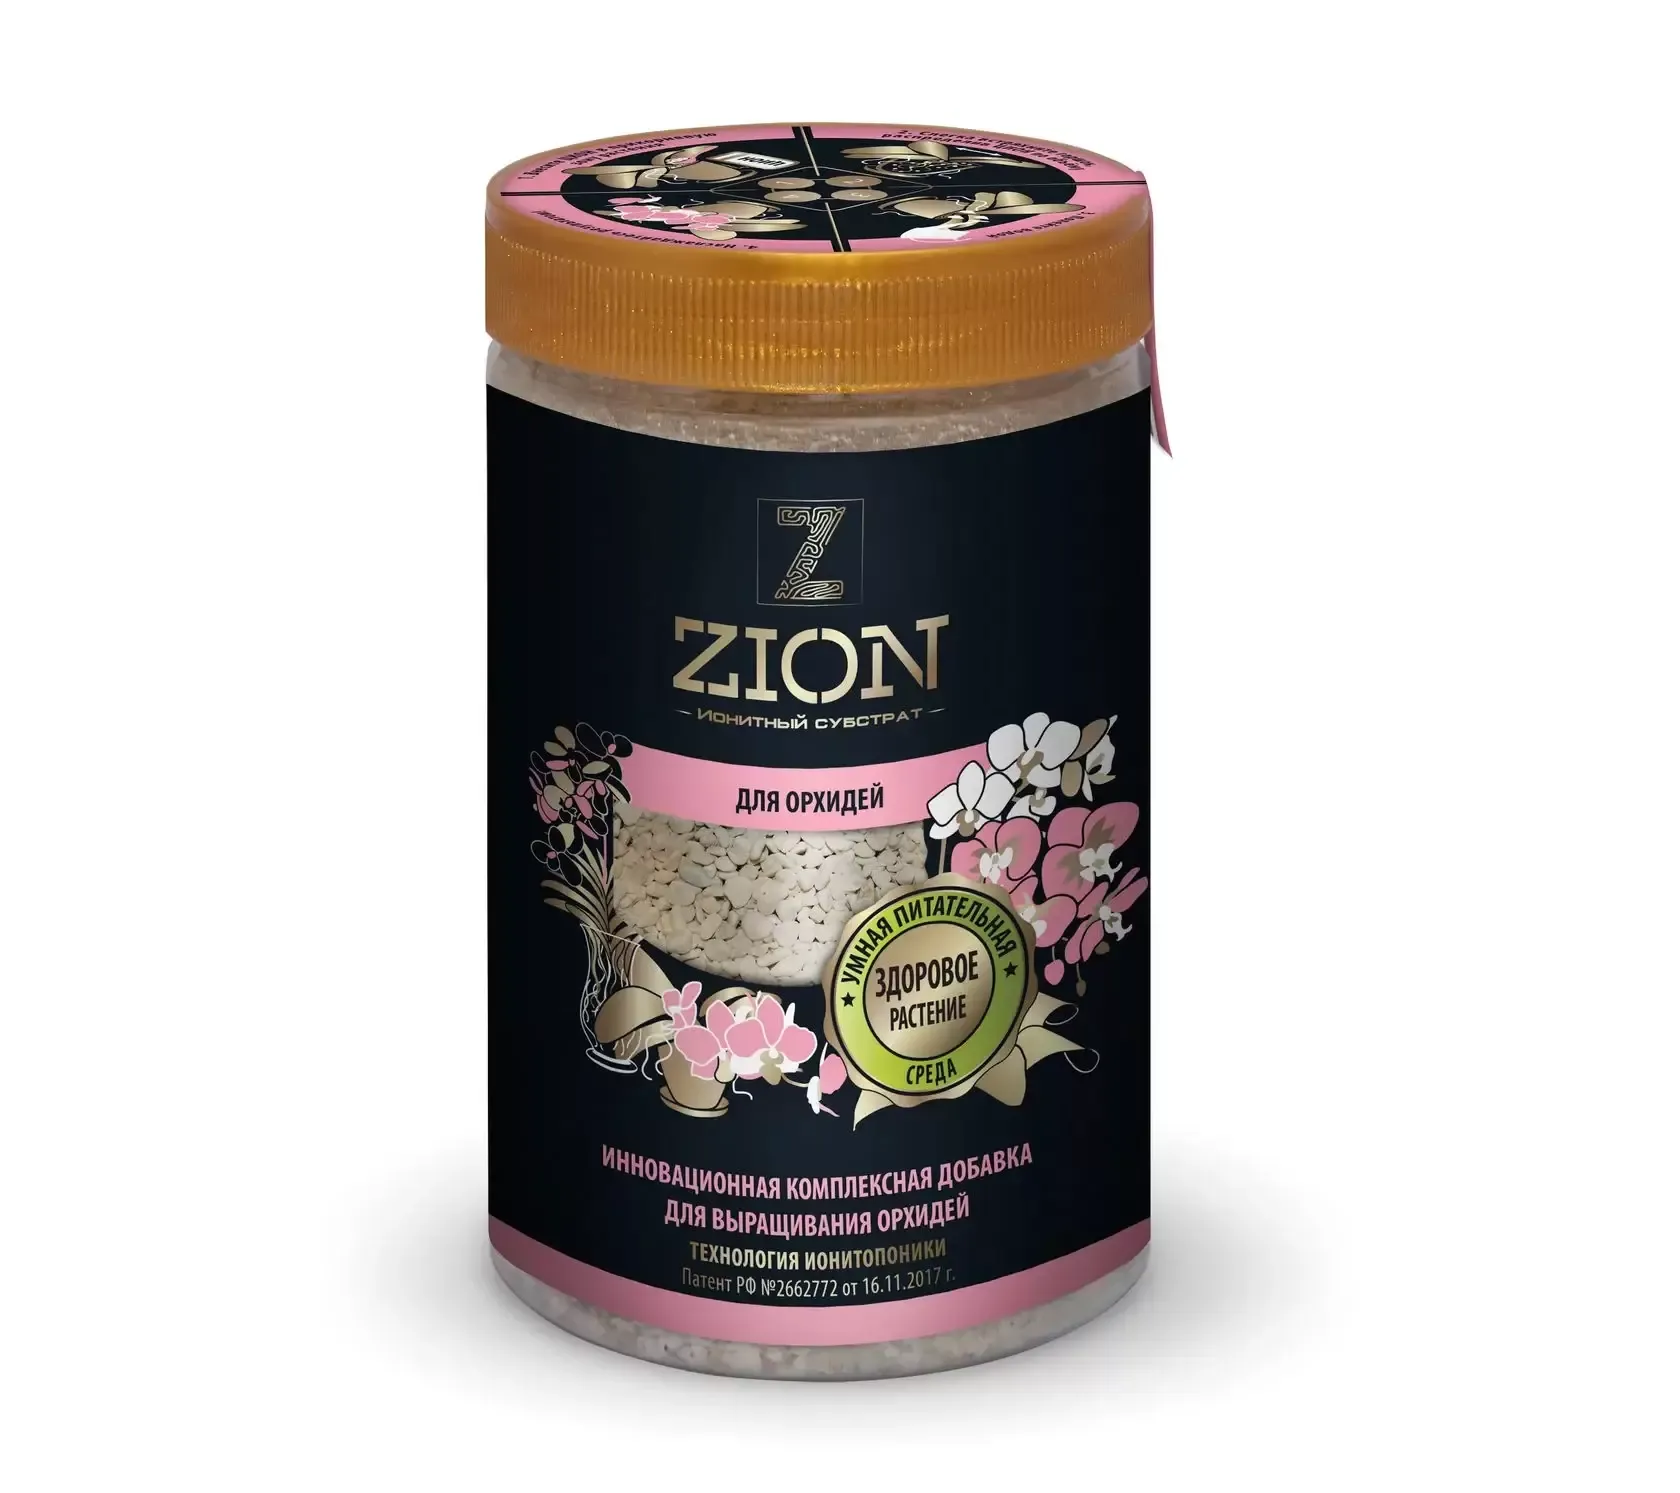 Питательная добавка ZION для орхидей, 700 гр